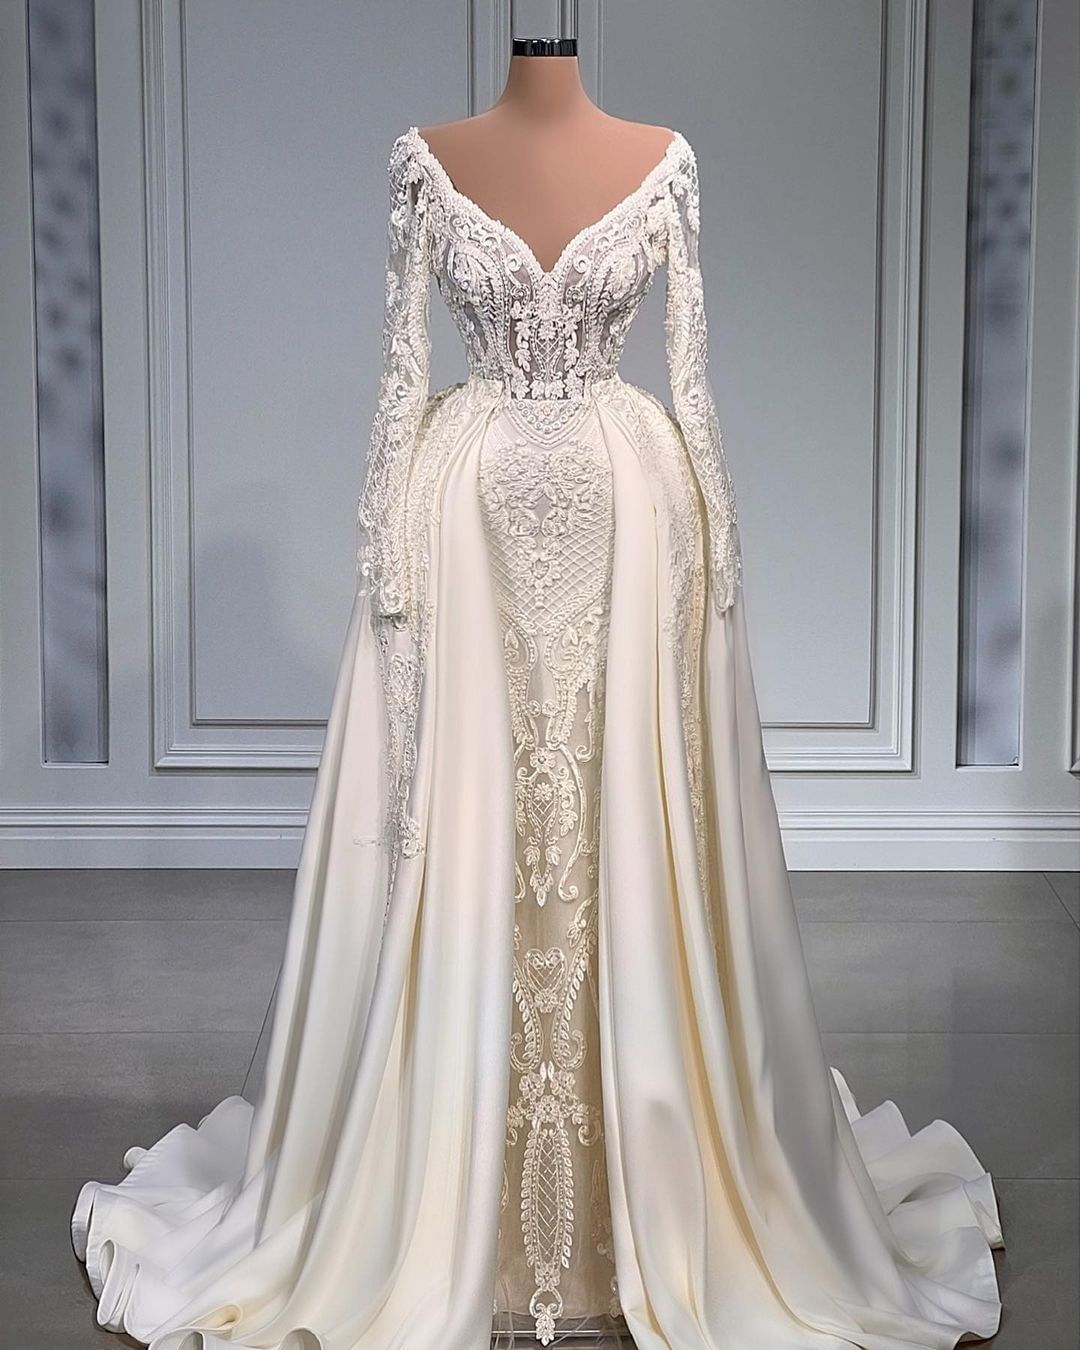 Off White Wedding Dresses, Boho Wedding Dress, Lace Applique Wedding Dresses, Robe De Mariage, Bridal Dresses, Elegant Wedding Dresses, Vestidos